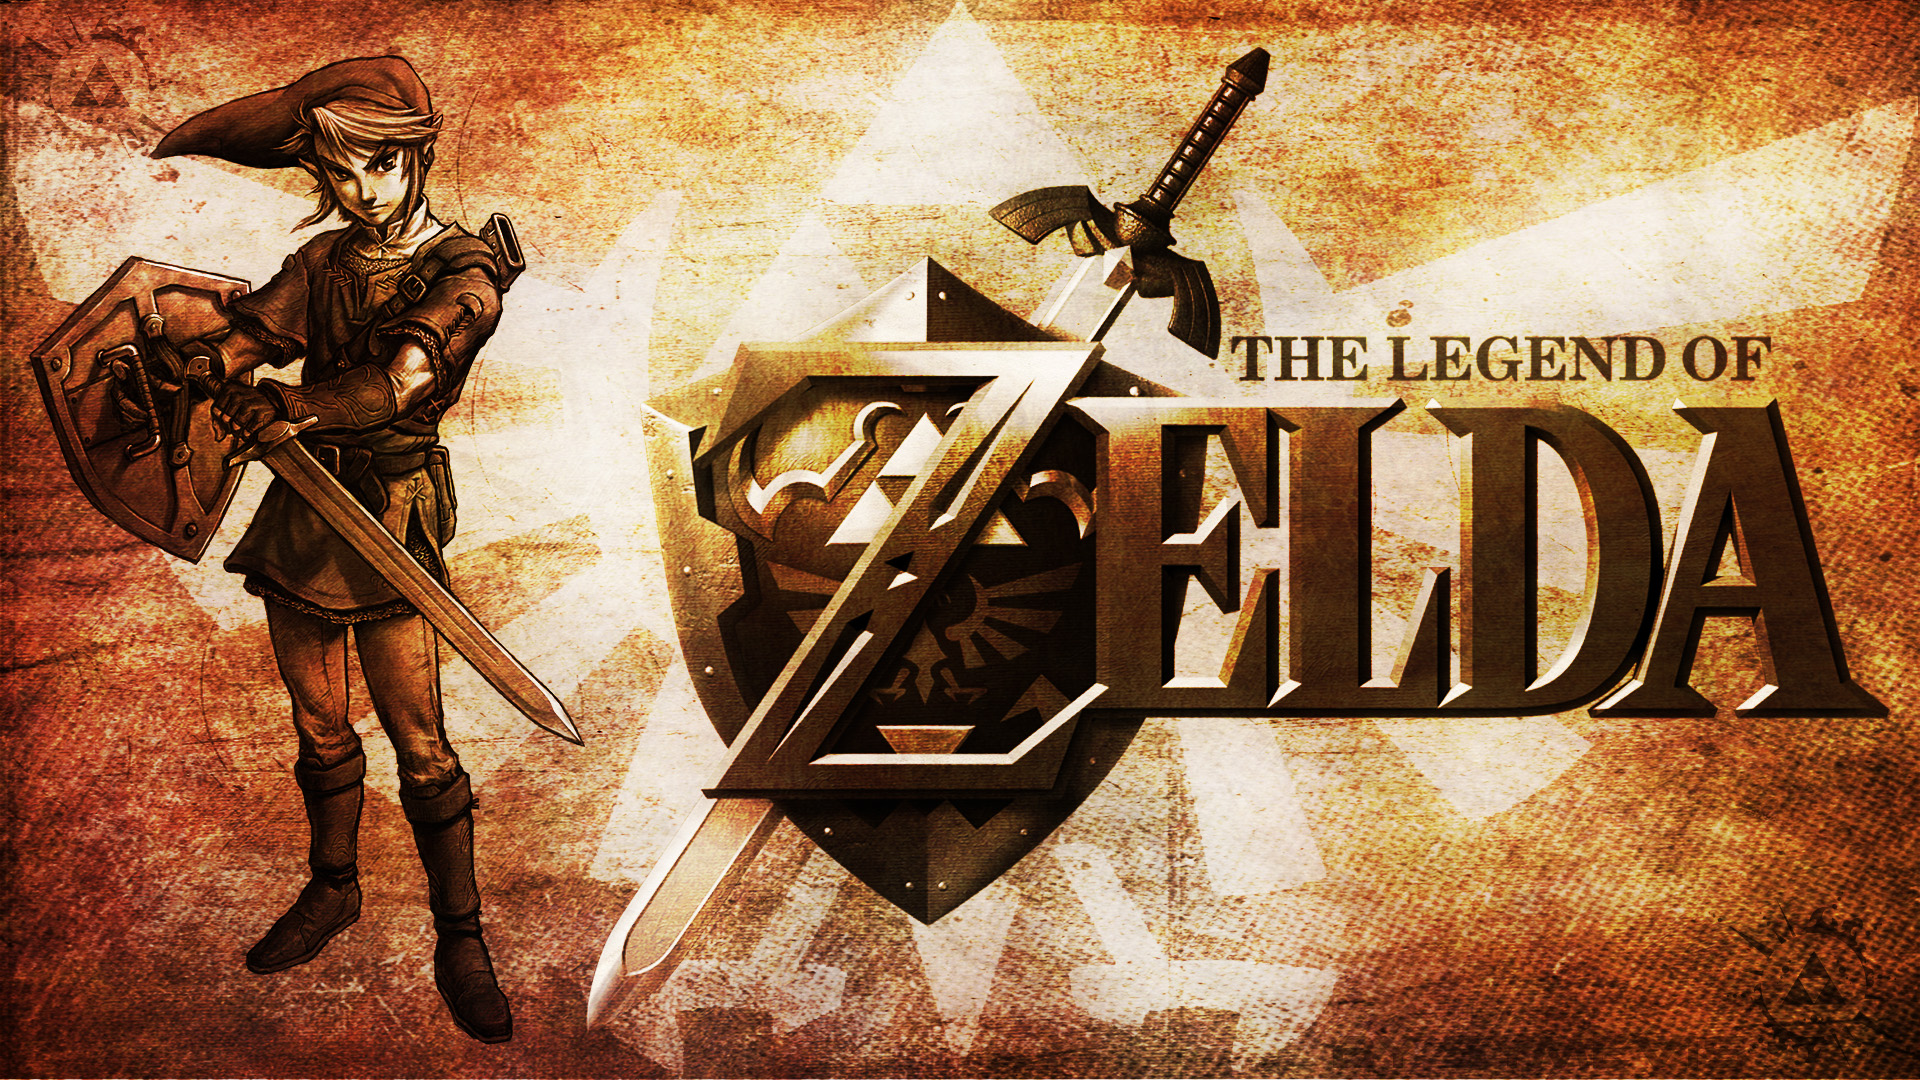 The Legend of Zelda - Wallpaper by Symevis on DeviantArt